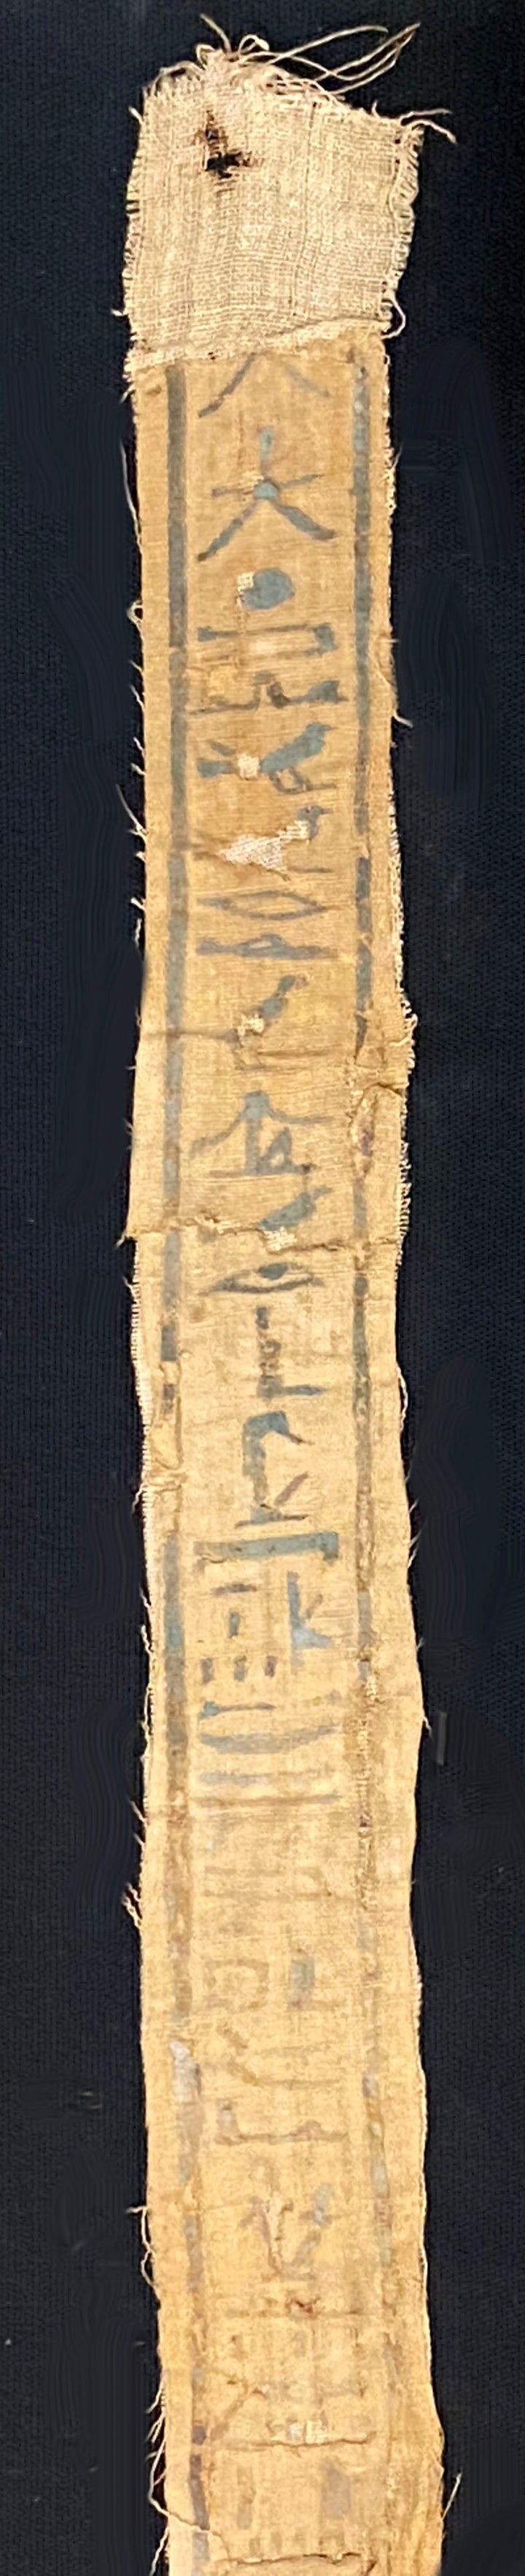 Egyptian Hieroglyphic Inscribed Mummy Bandage for Neferhotep